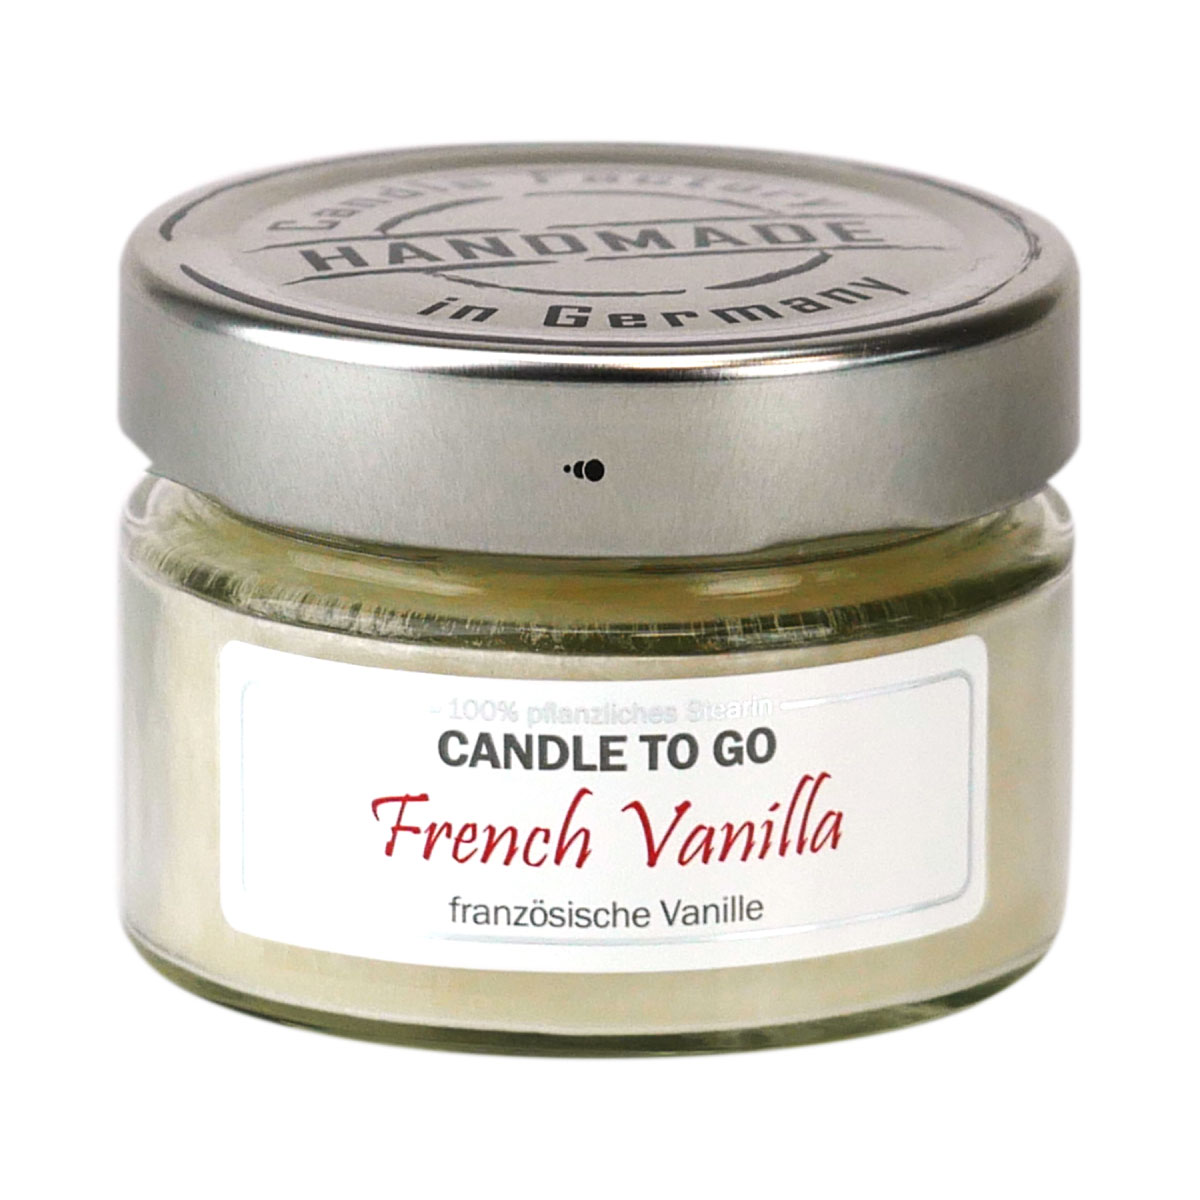 French Vanilla - Candle to Go die Duftkerze für unterwegs